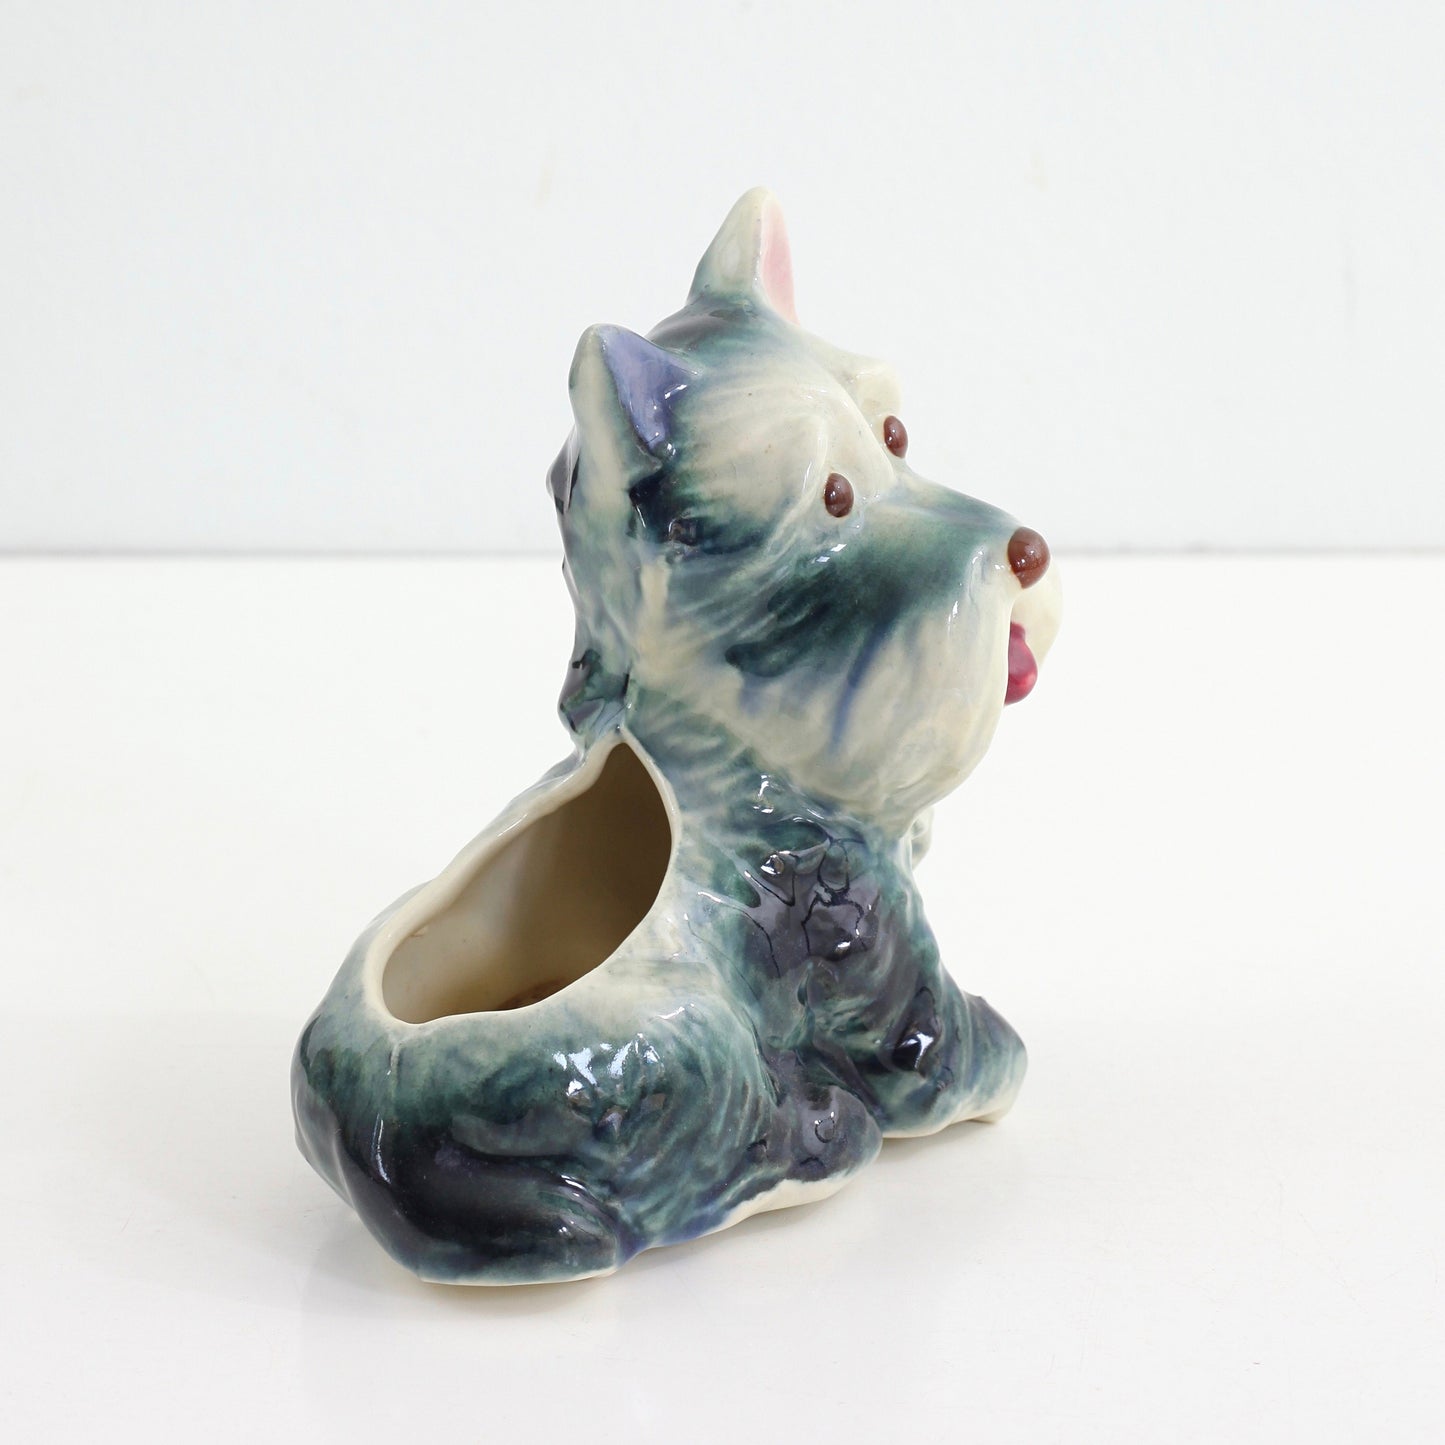 SOLD - Vintage Ceramic Dog Planter